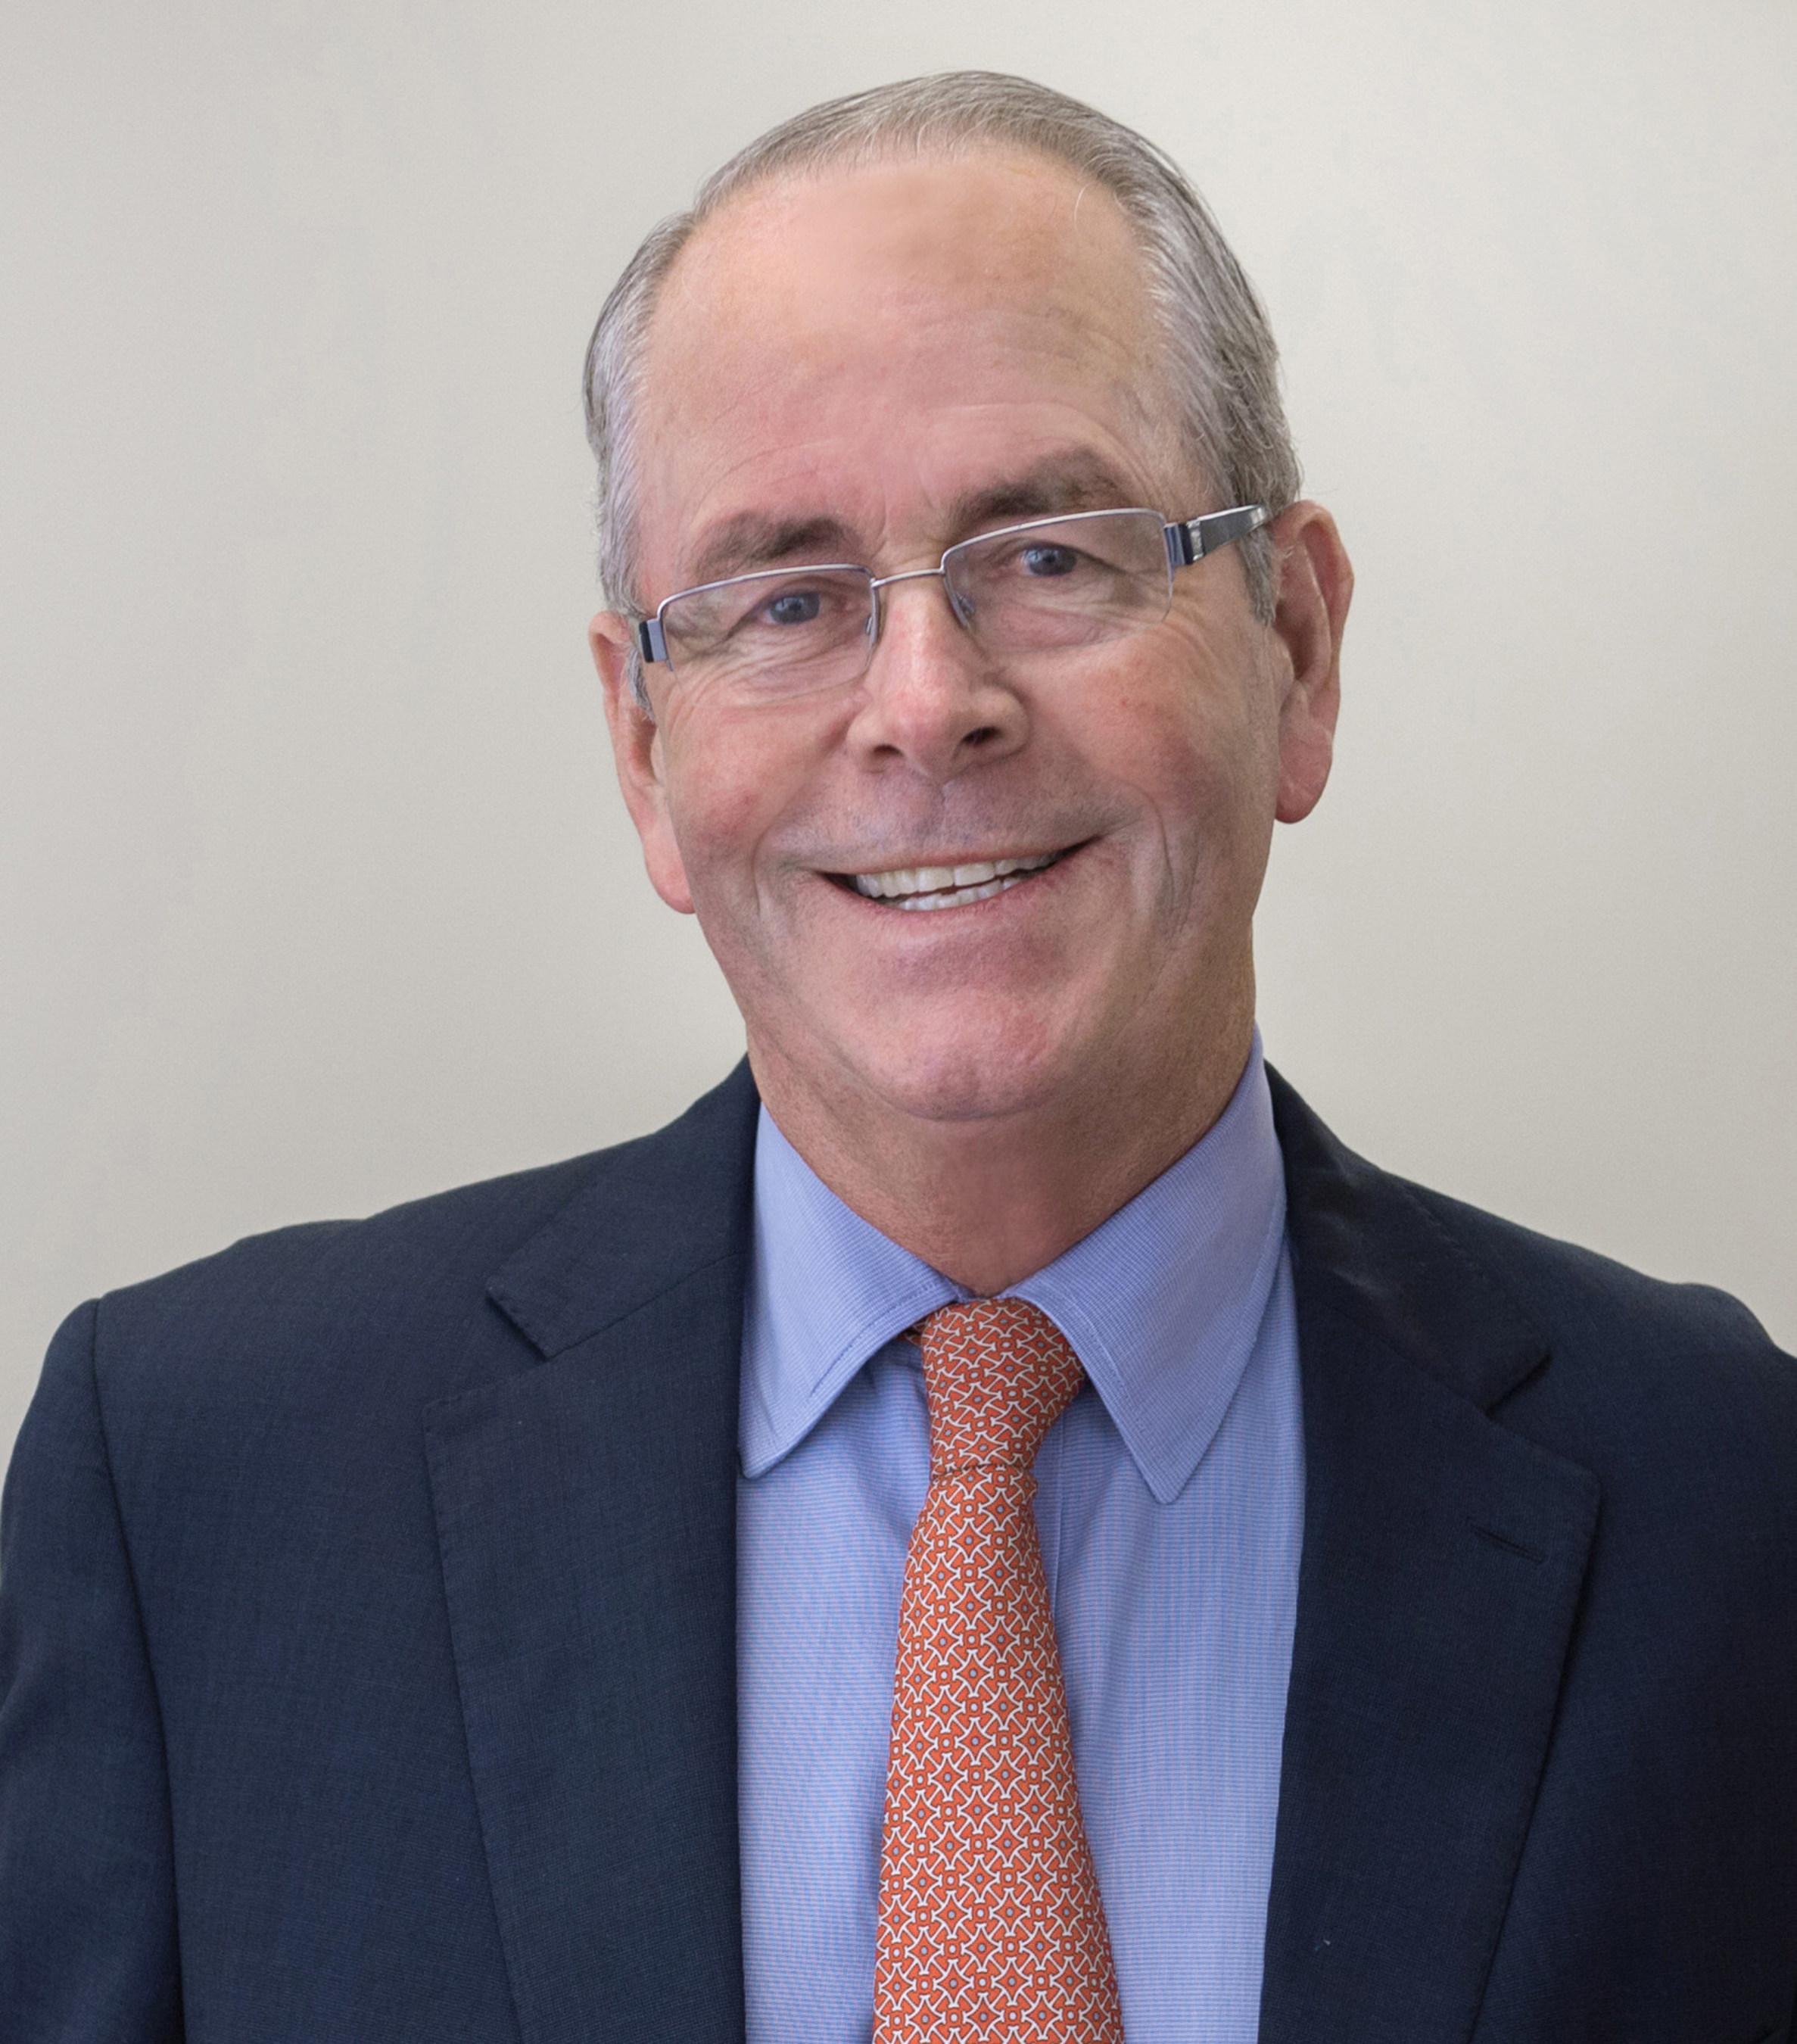 Thomas F. Gilbane, Jr., Chairman & CEO of Gilbane Building Cos., CIRT Chairman 2015 - 2016